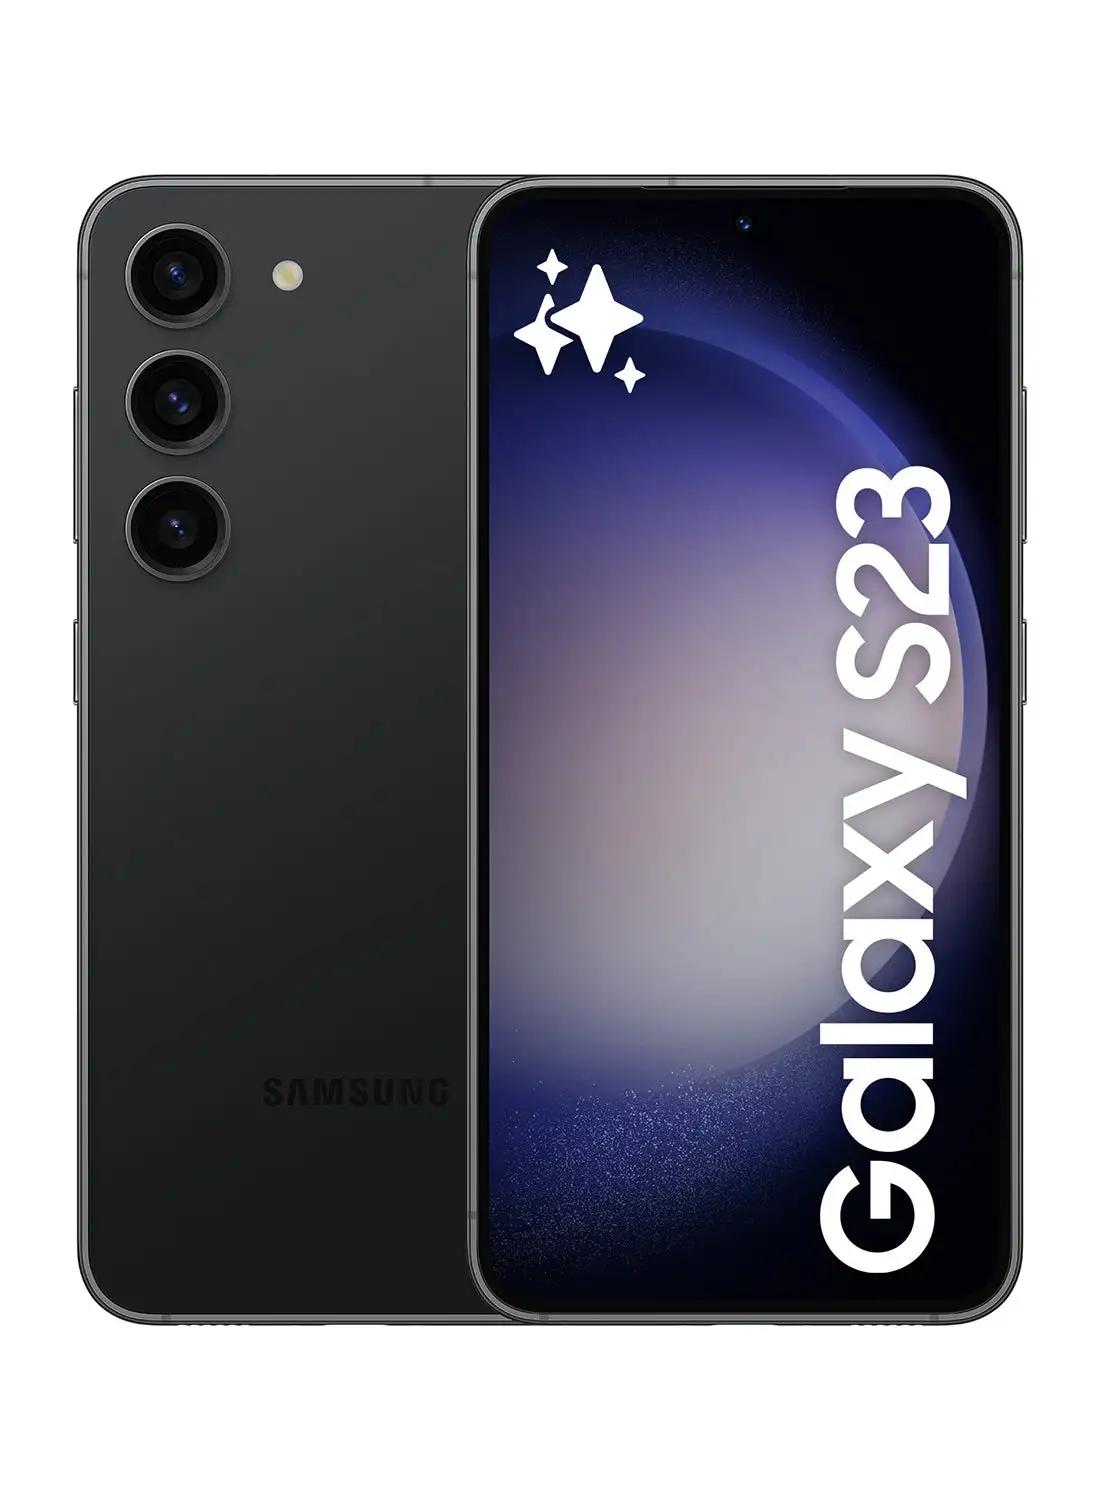 سامسونج جالاكسي S23 5G ثنائي الشريحة باللون الأسود فانتوم وذاكرة الوصول العشوائي (RAM) سعة 8 جيجابايت وسعة 128 جيجابايت - إصدار الشرق الأوسط